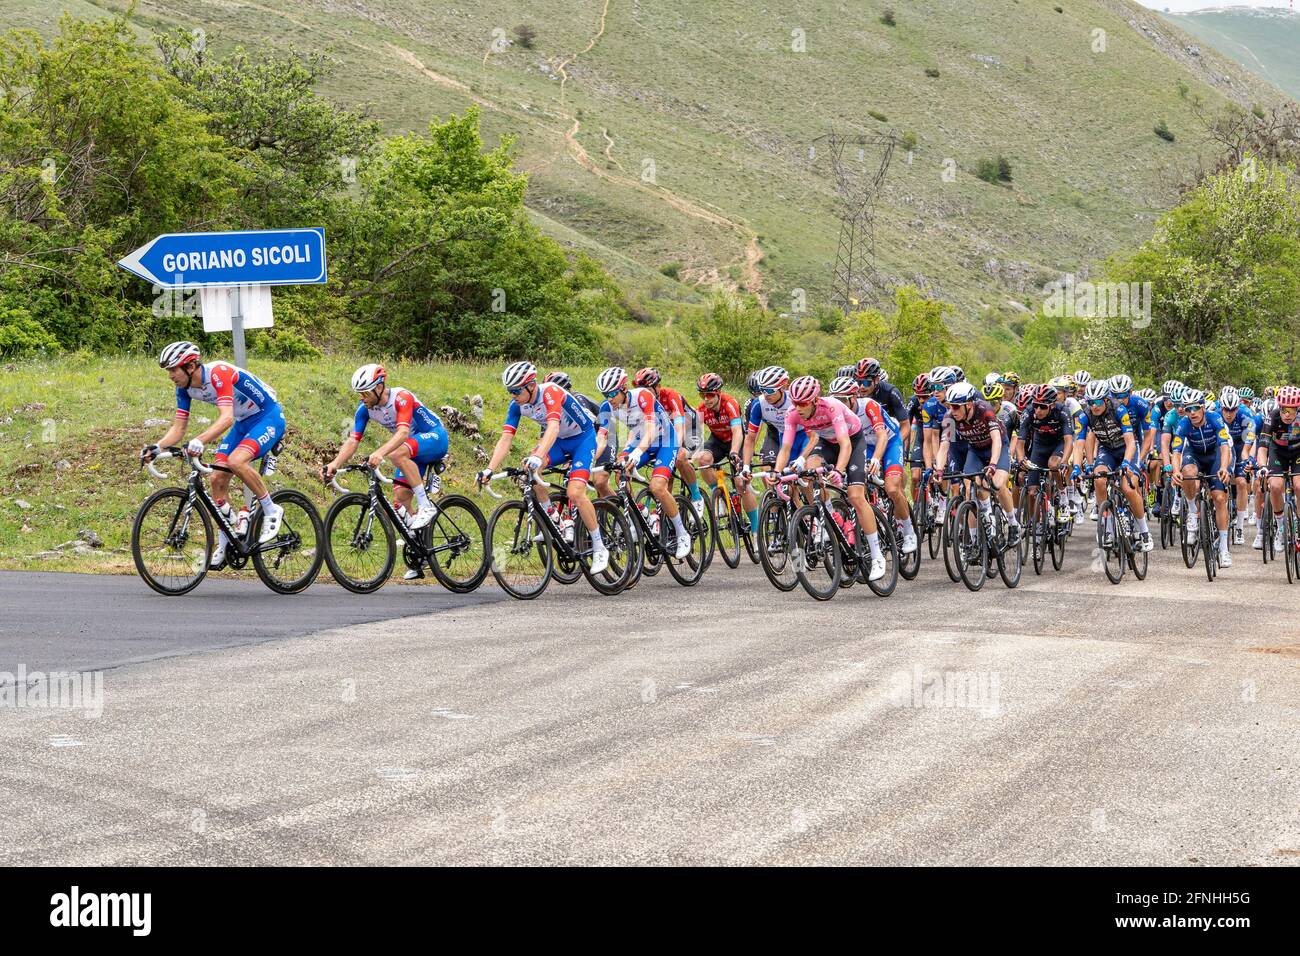 Bergbühne in den Abruzzen des Giro d'Italia. Gruppe von Radfahrern im Rennen. Abruzzen, italien, europa Stockfoto